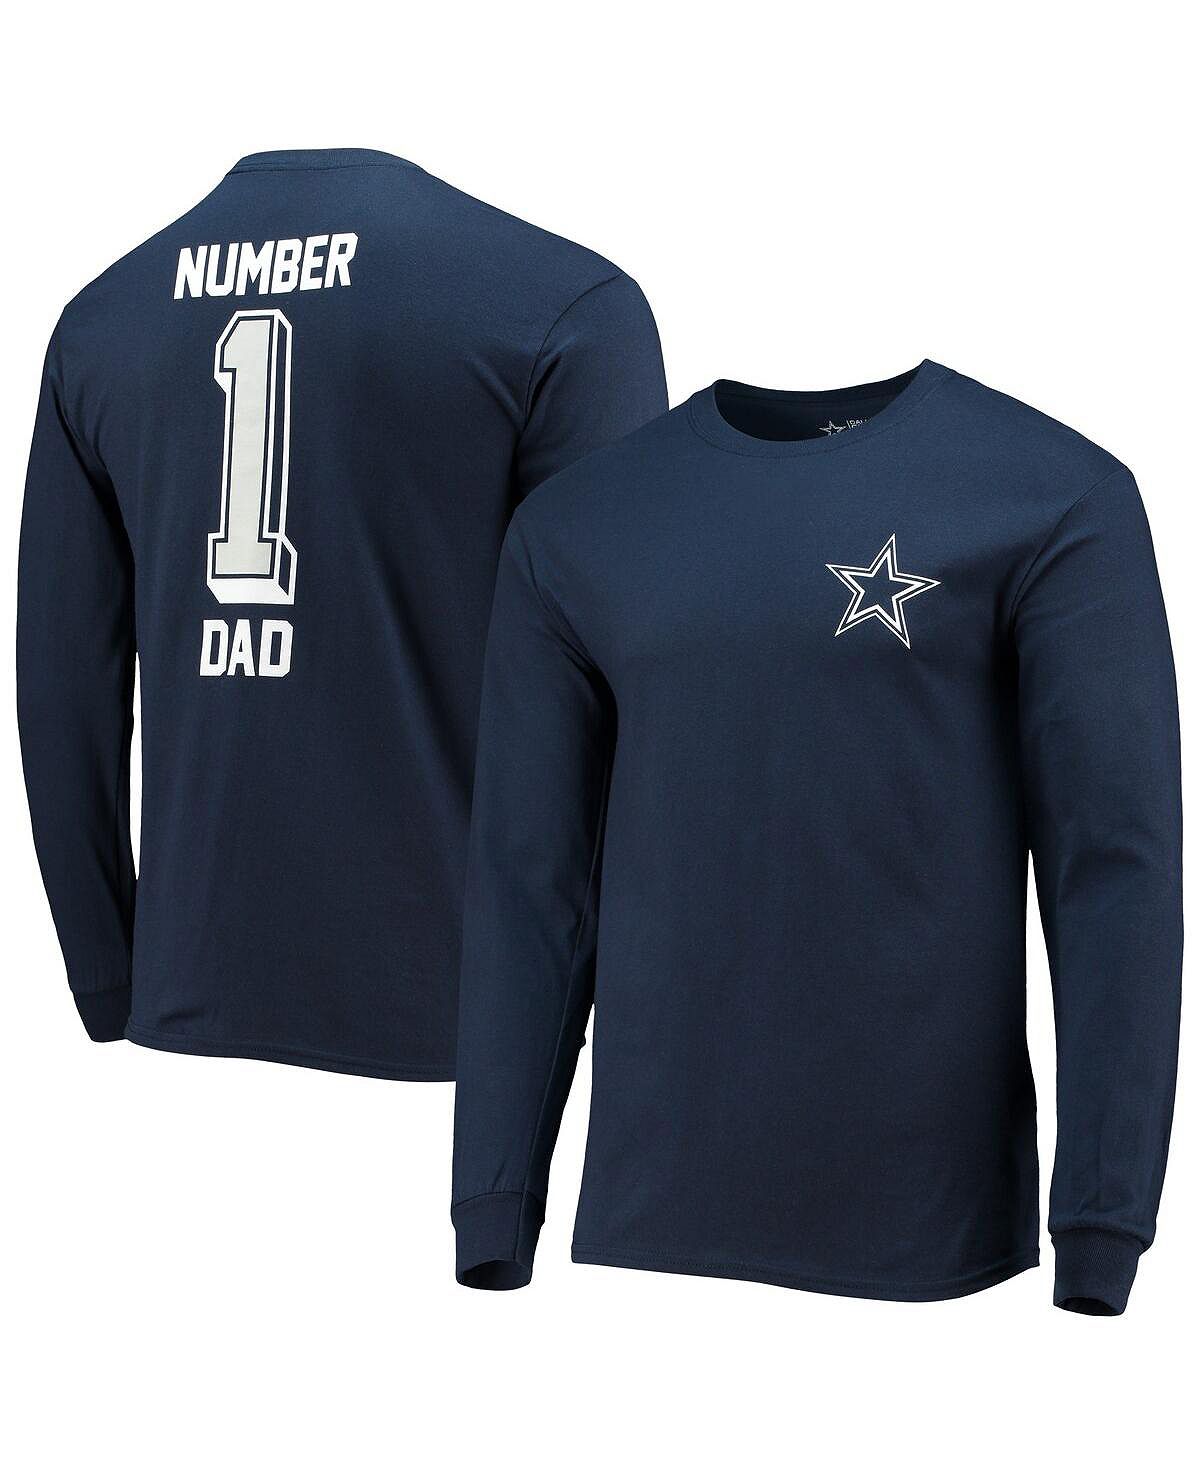 Мужская фирменная темно-синяя футболка с длинным рукавом dallas cowboys #1 dad dad Fanatics, синий